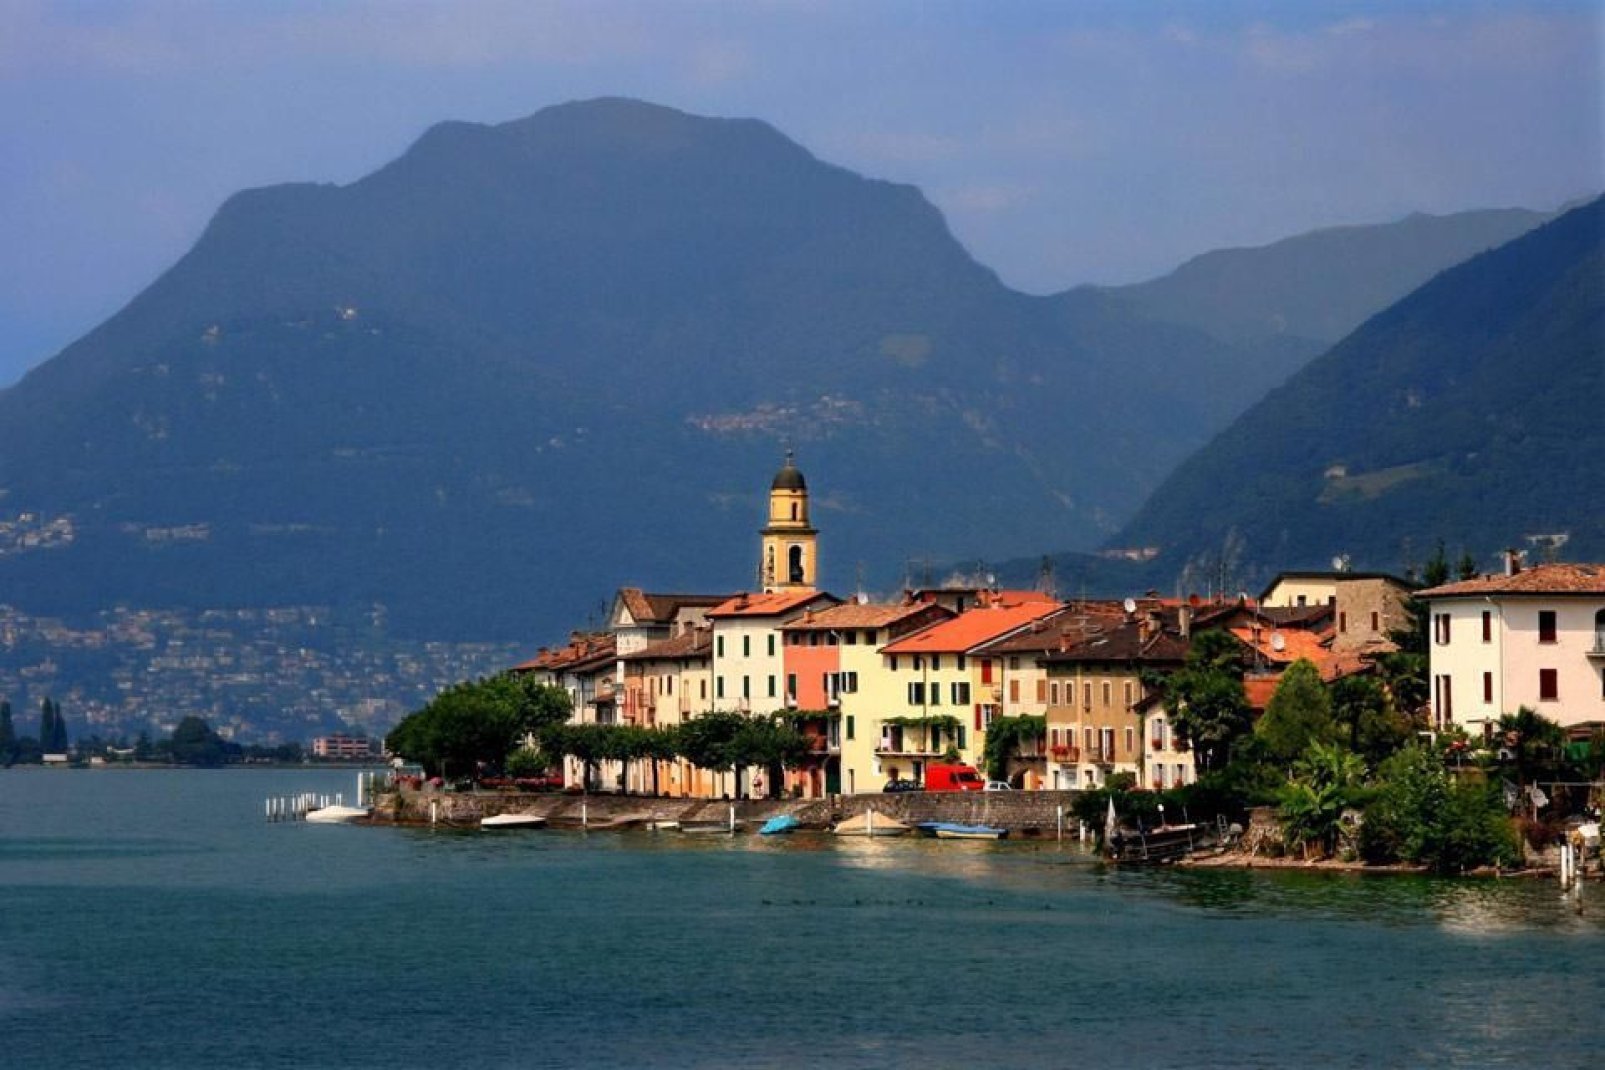 Lugano, con sus casas de colores vivos, tiene acento italiano. En este cantón, la lengua oficial es el italiano.